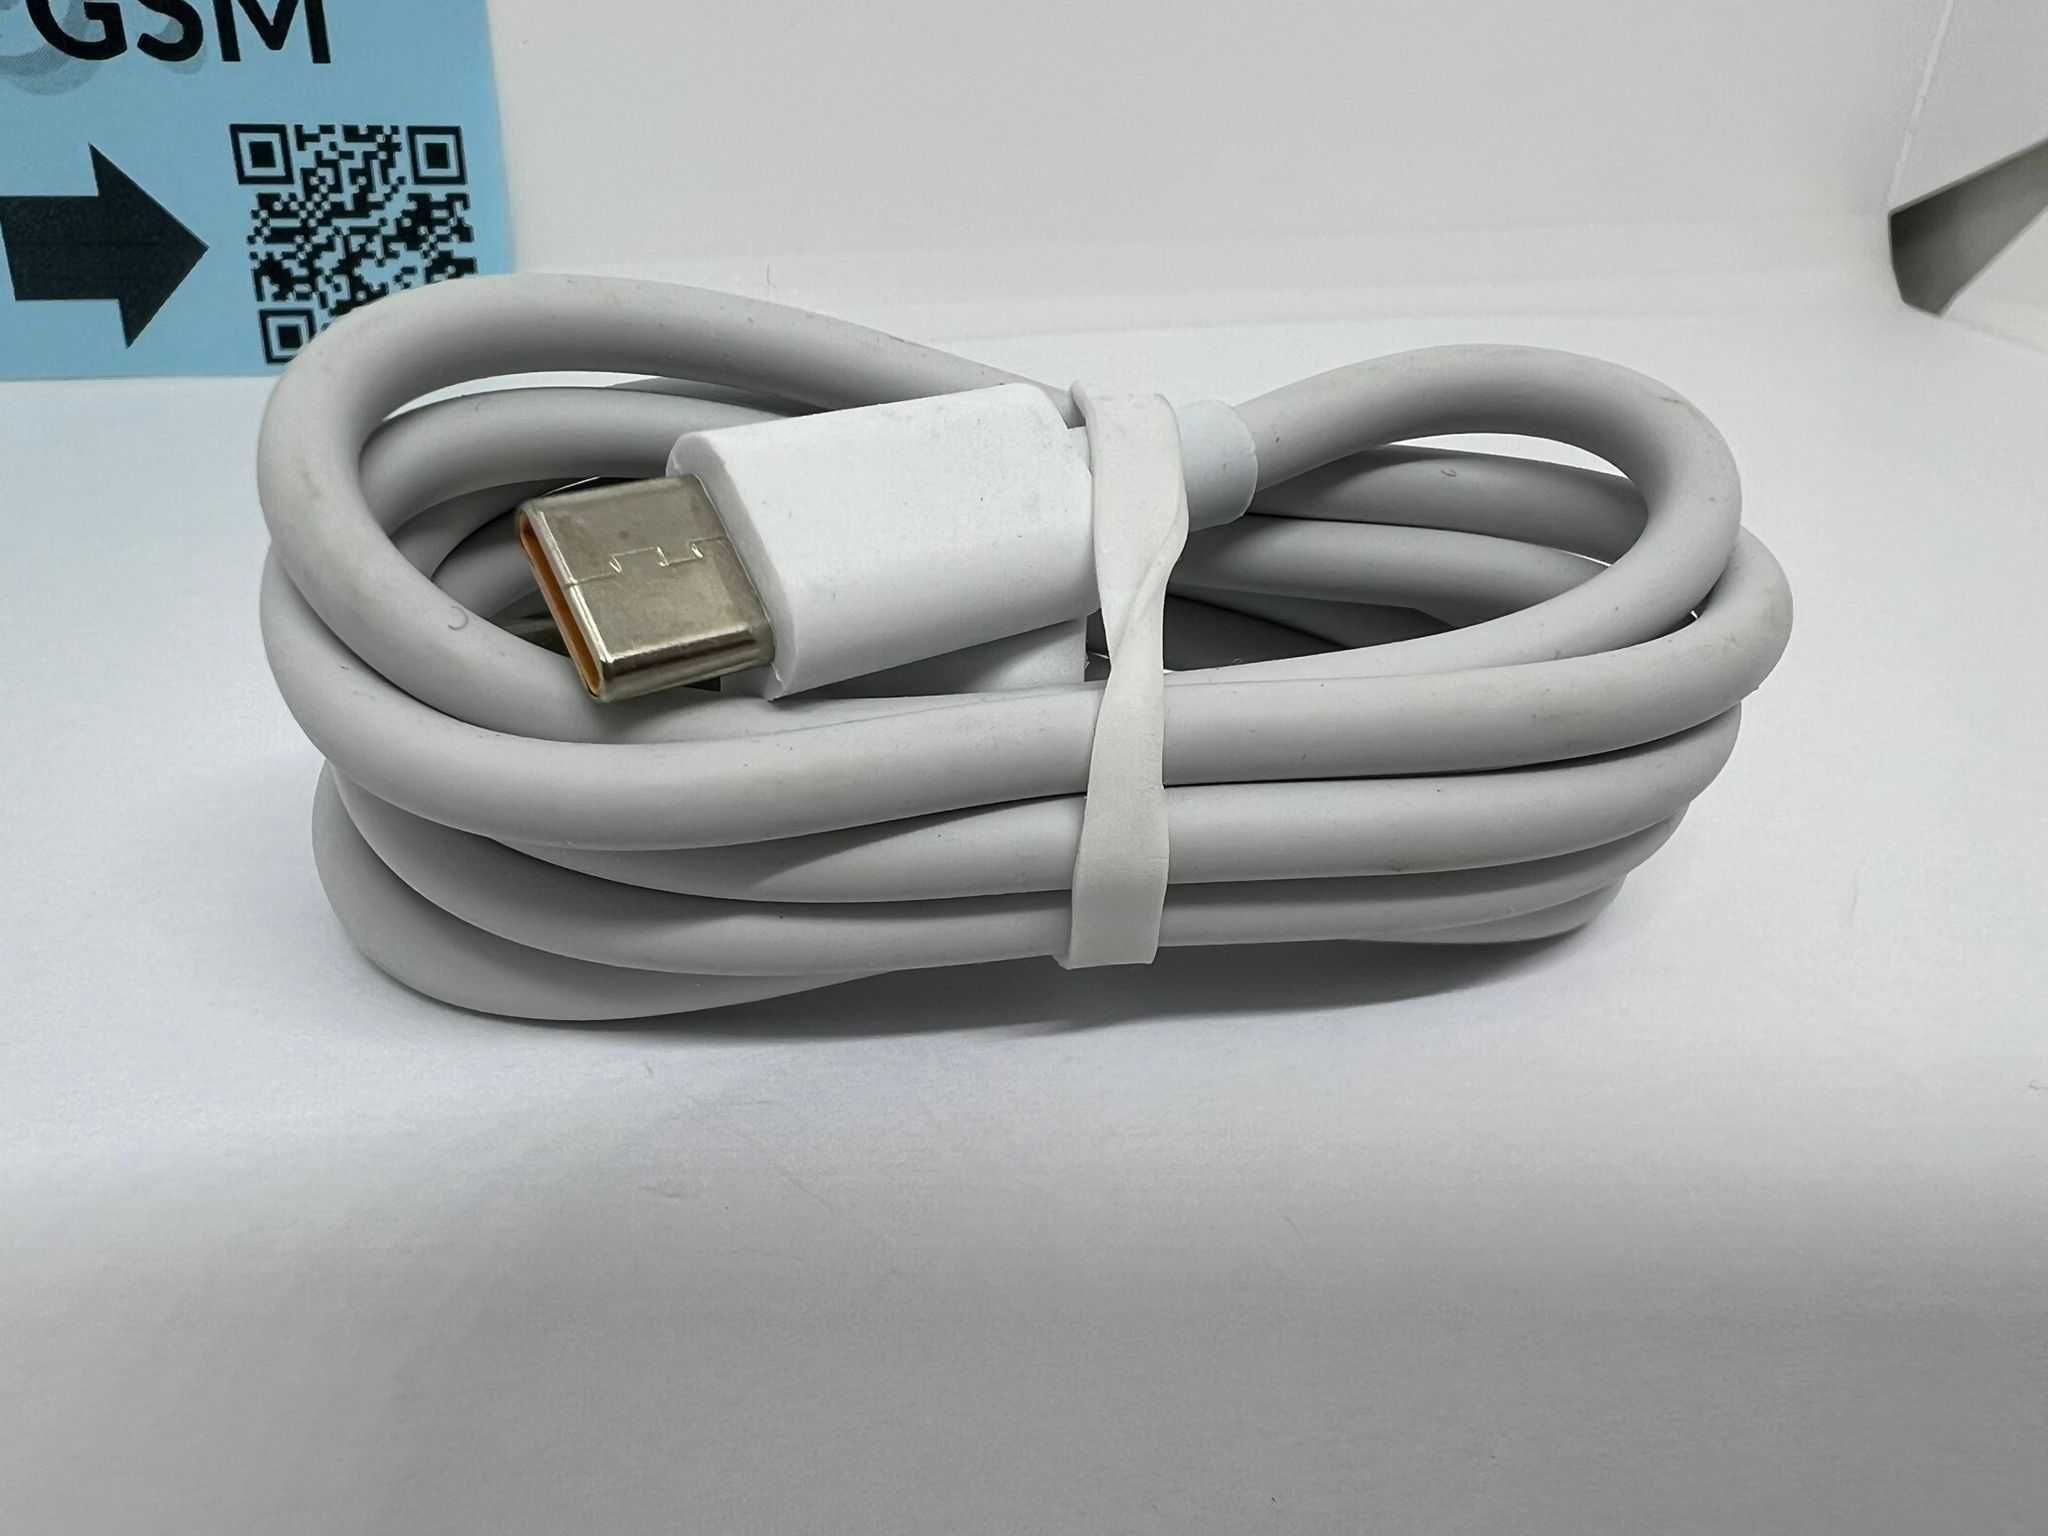 Kabel USB-USB-C 6Asuper szybki, 66W SuperCharger